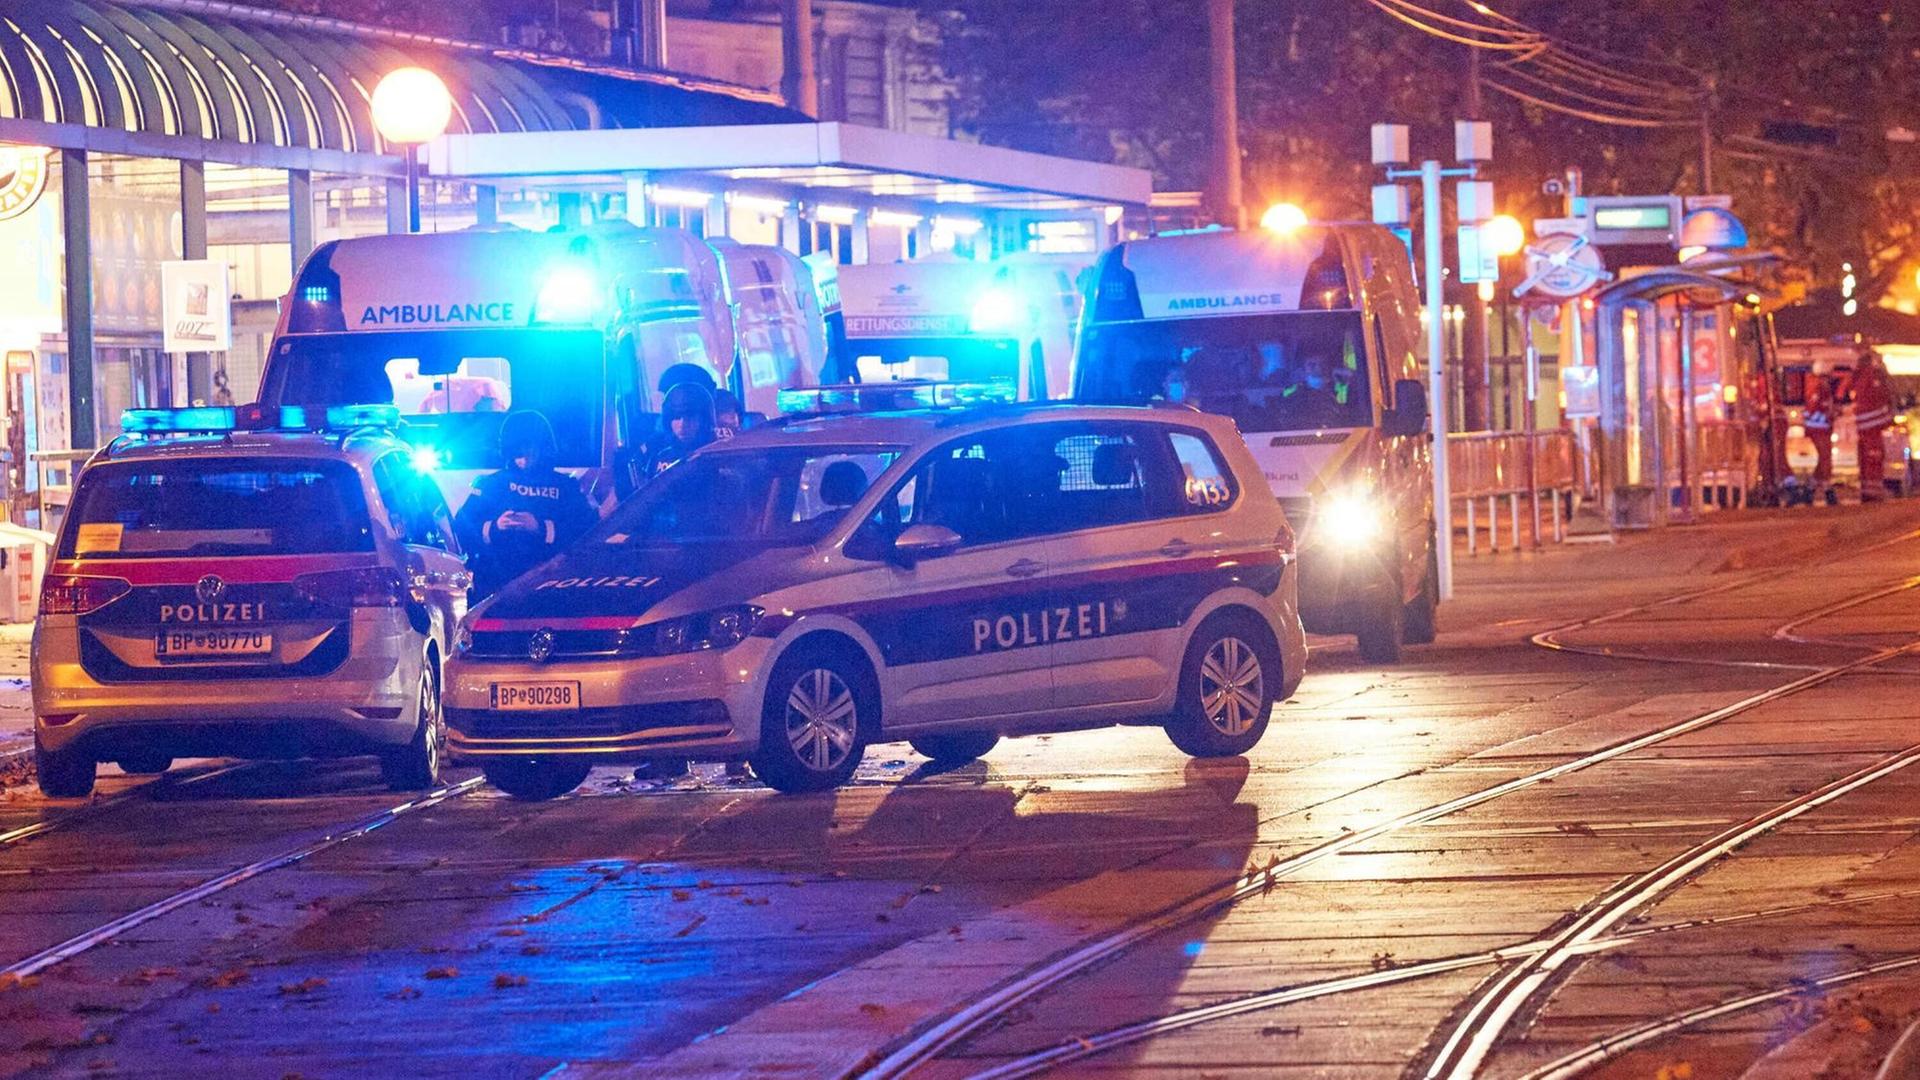 Am 2. November gab es einen Terroranschlag in der Wiener Innenstadt, ein Großaufgebot von Polizei und Rettung sind im Einsatz